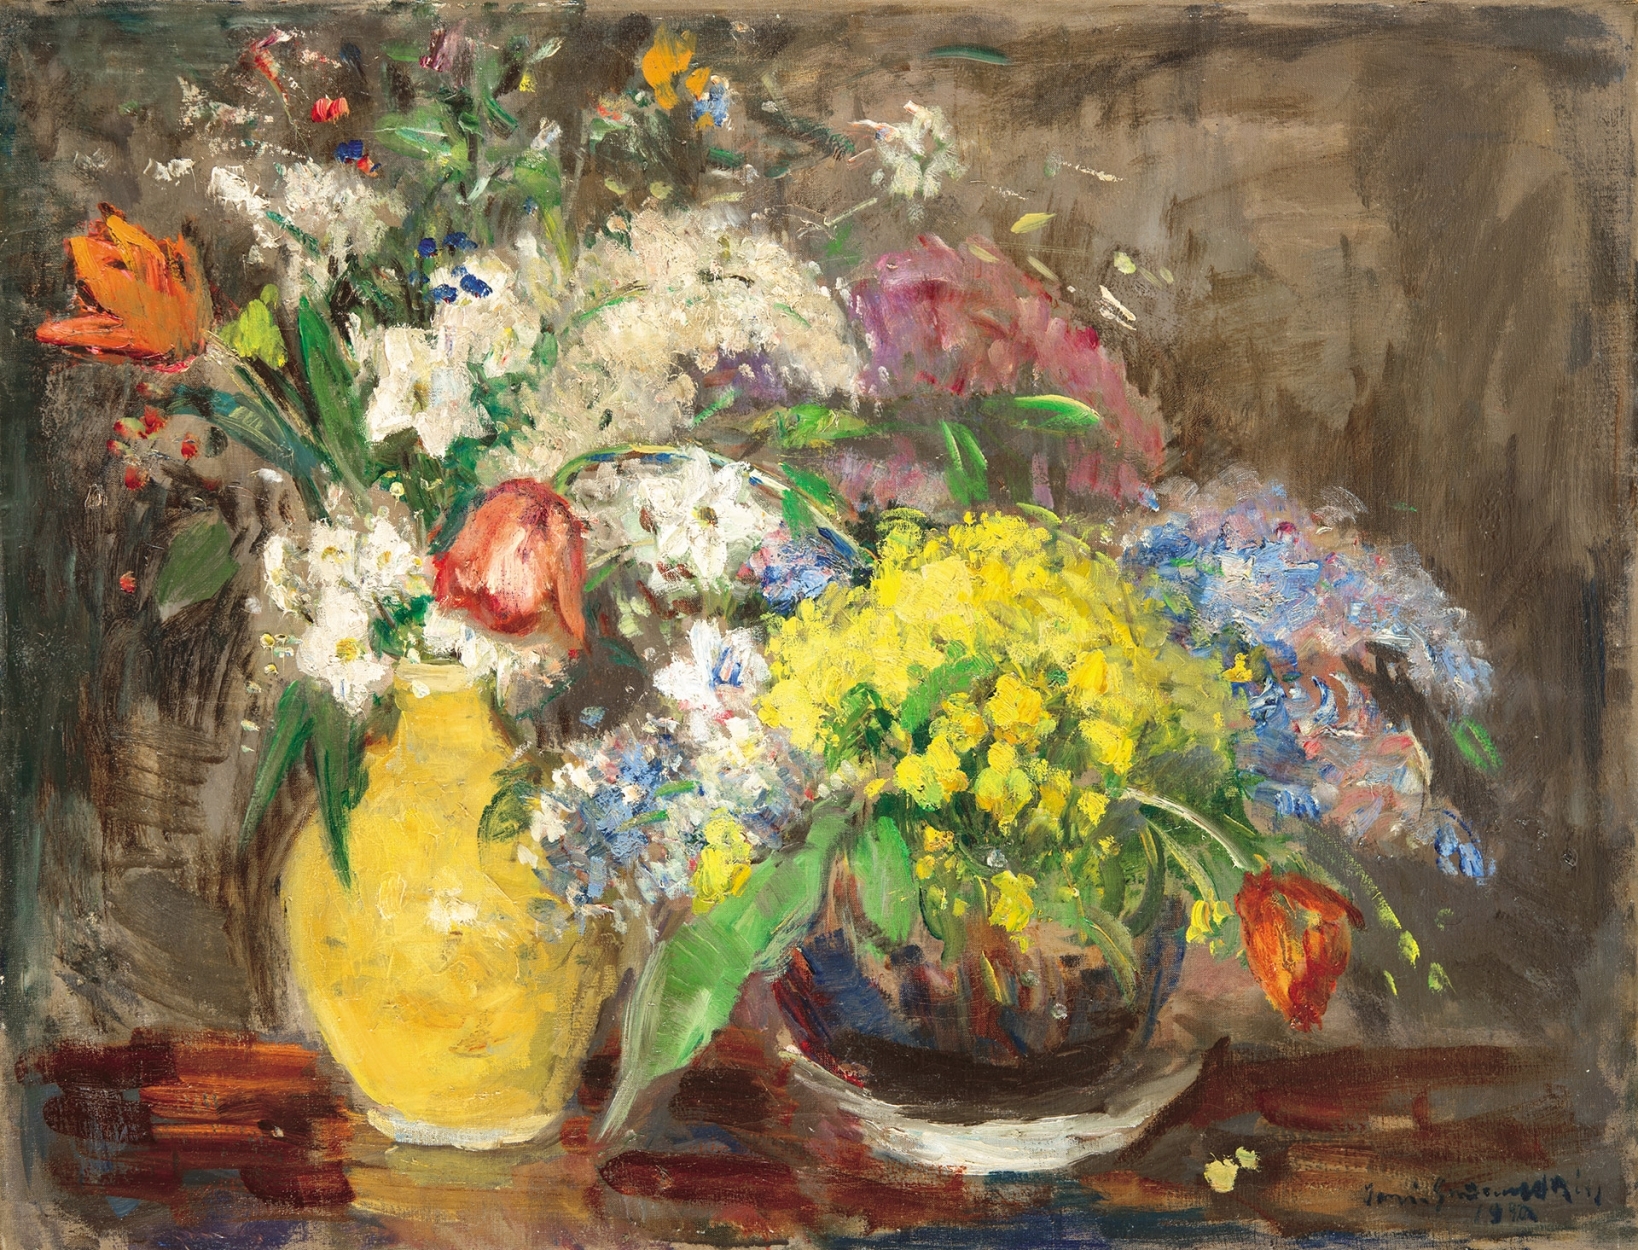 Iványi Grünwald Béla (1867-1940) Flowers in a Jar on a Platter, 1940